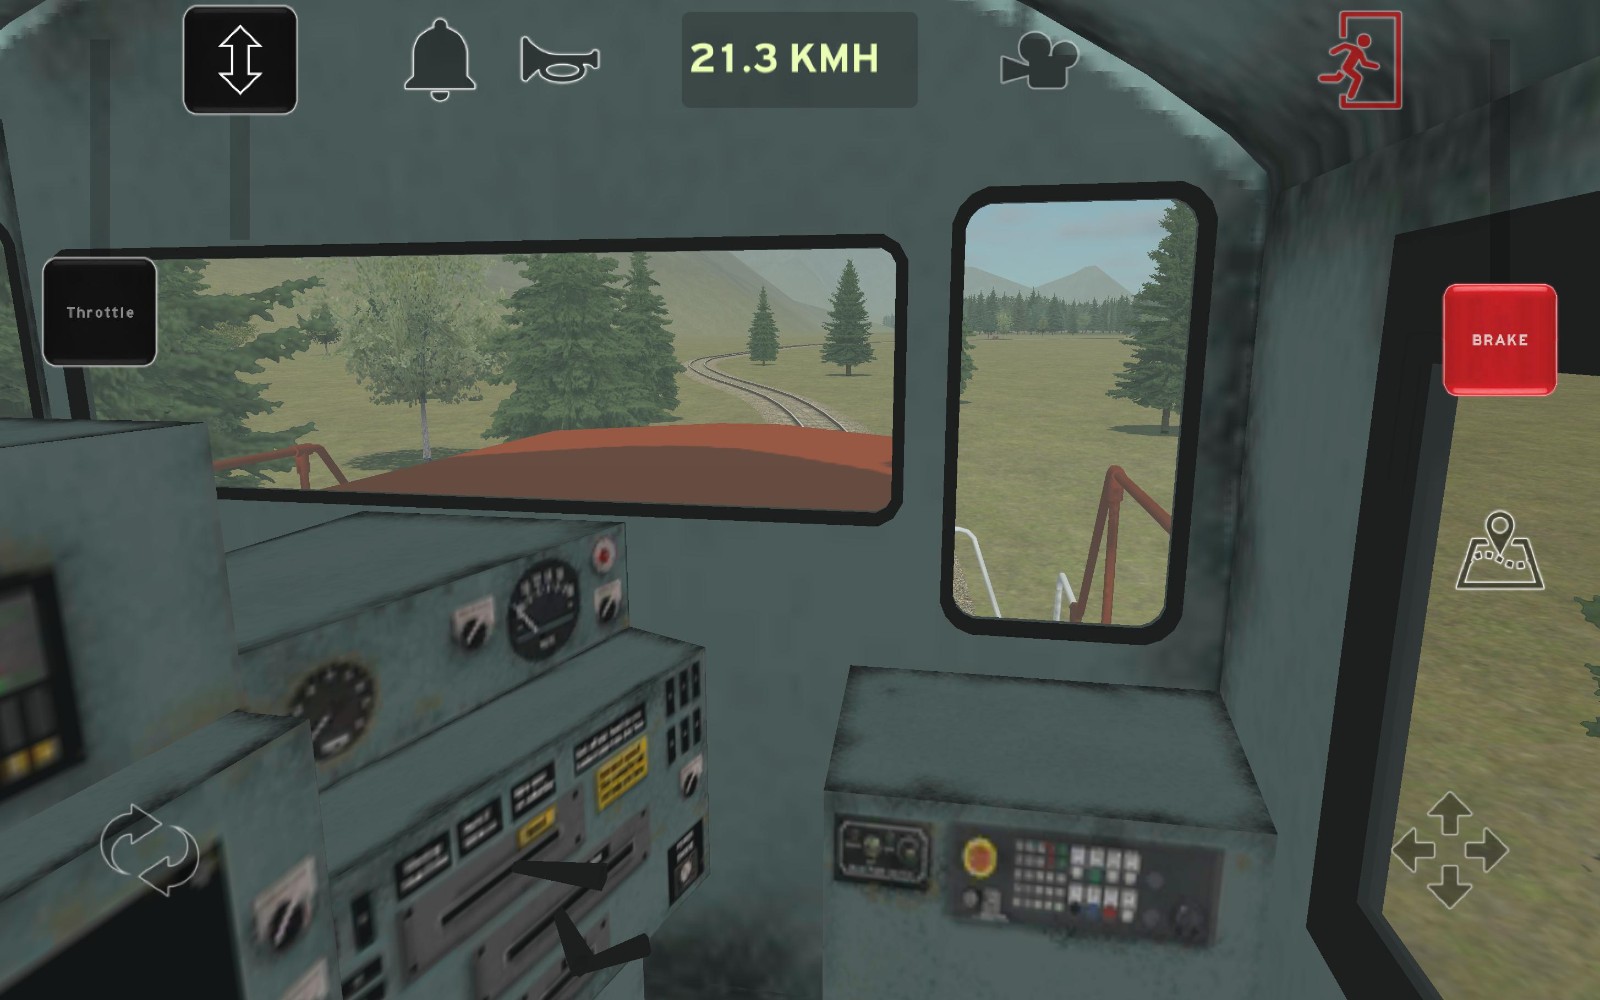 火车和铁路货场模拟器官方版